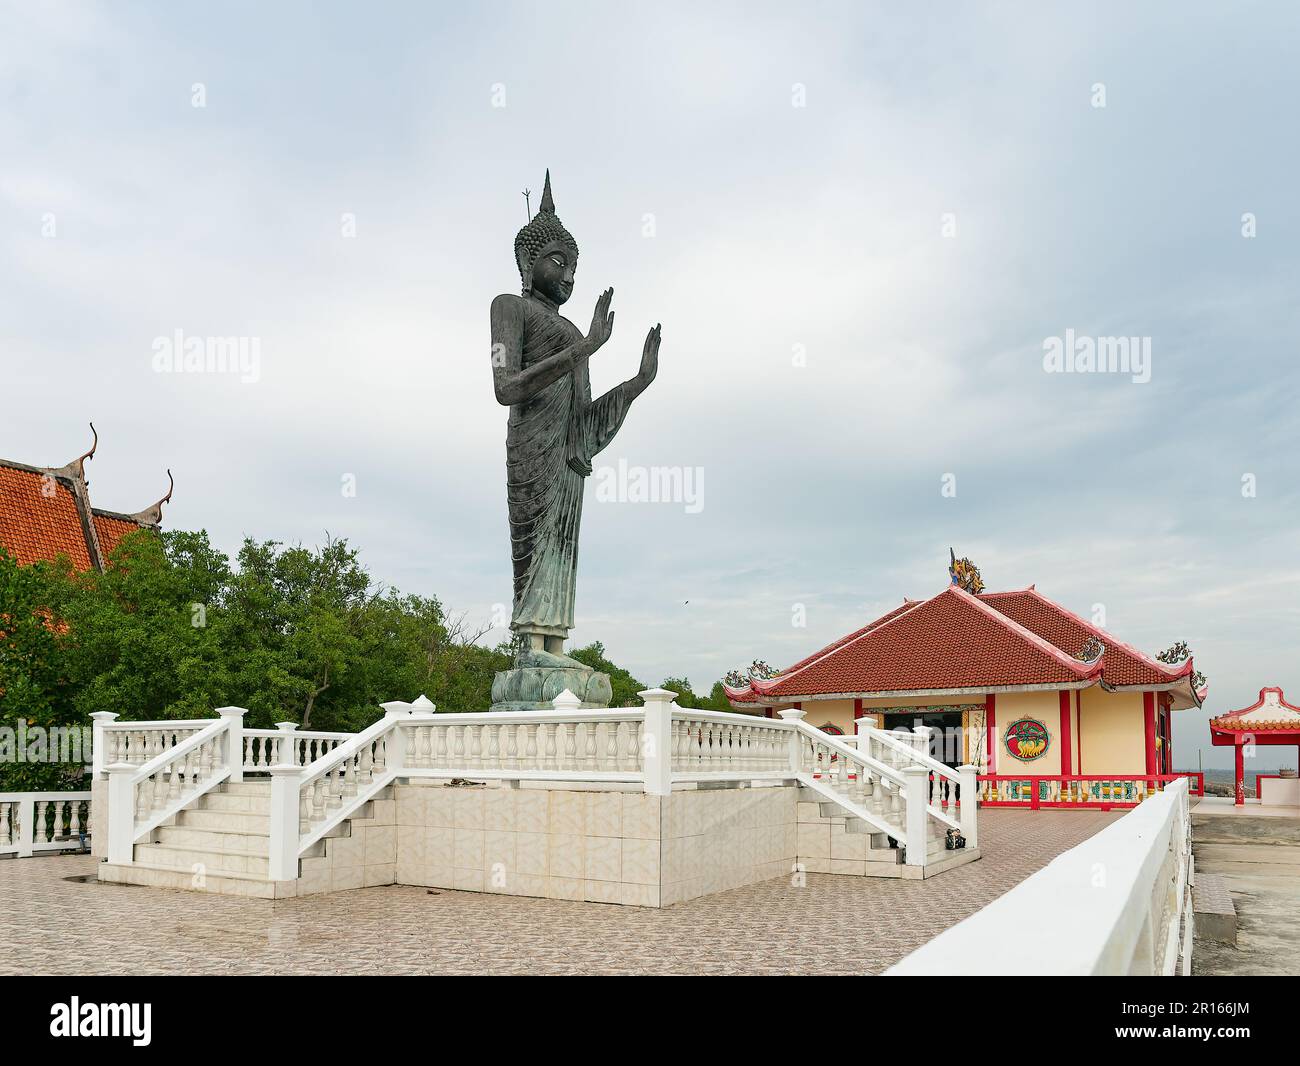 Image de Bouddha debout et temple de style chinois à Wat Khun Samut Chin, province de Samut Prakan en Thaïlande. Wat Khun Samut Chin est un temple aujourd'hui situé Banque D'Images